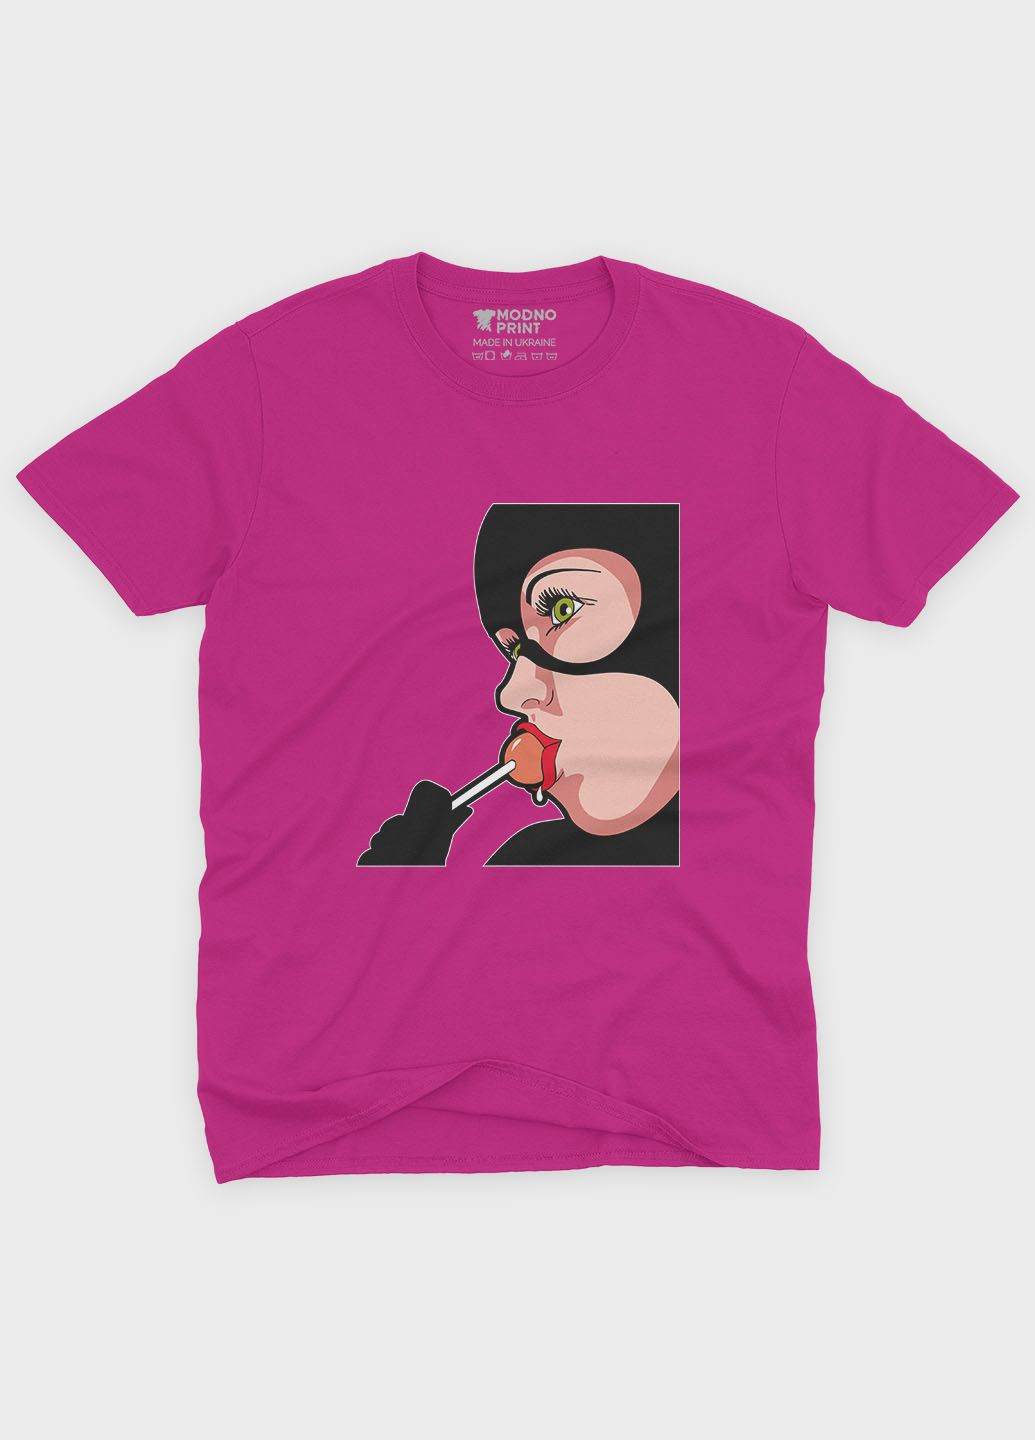 Розовая демисезонная футболка для девочки с принтом супервора - женщина-кошка (ts001-1-fuxj-006-007-001-g) Modno